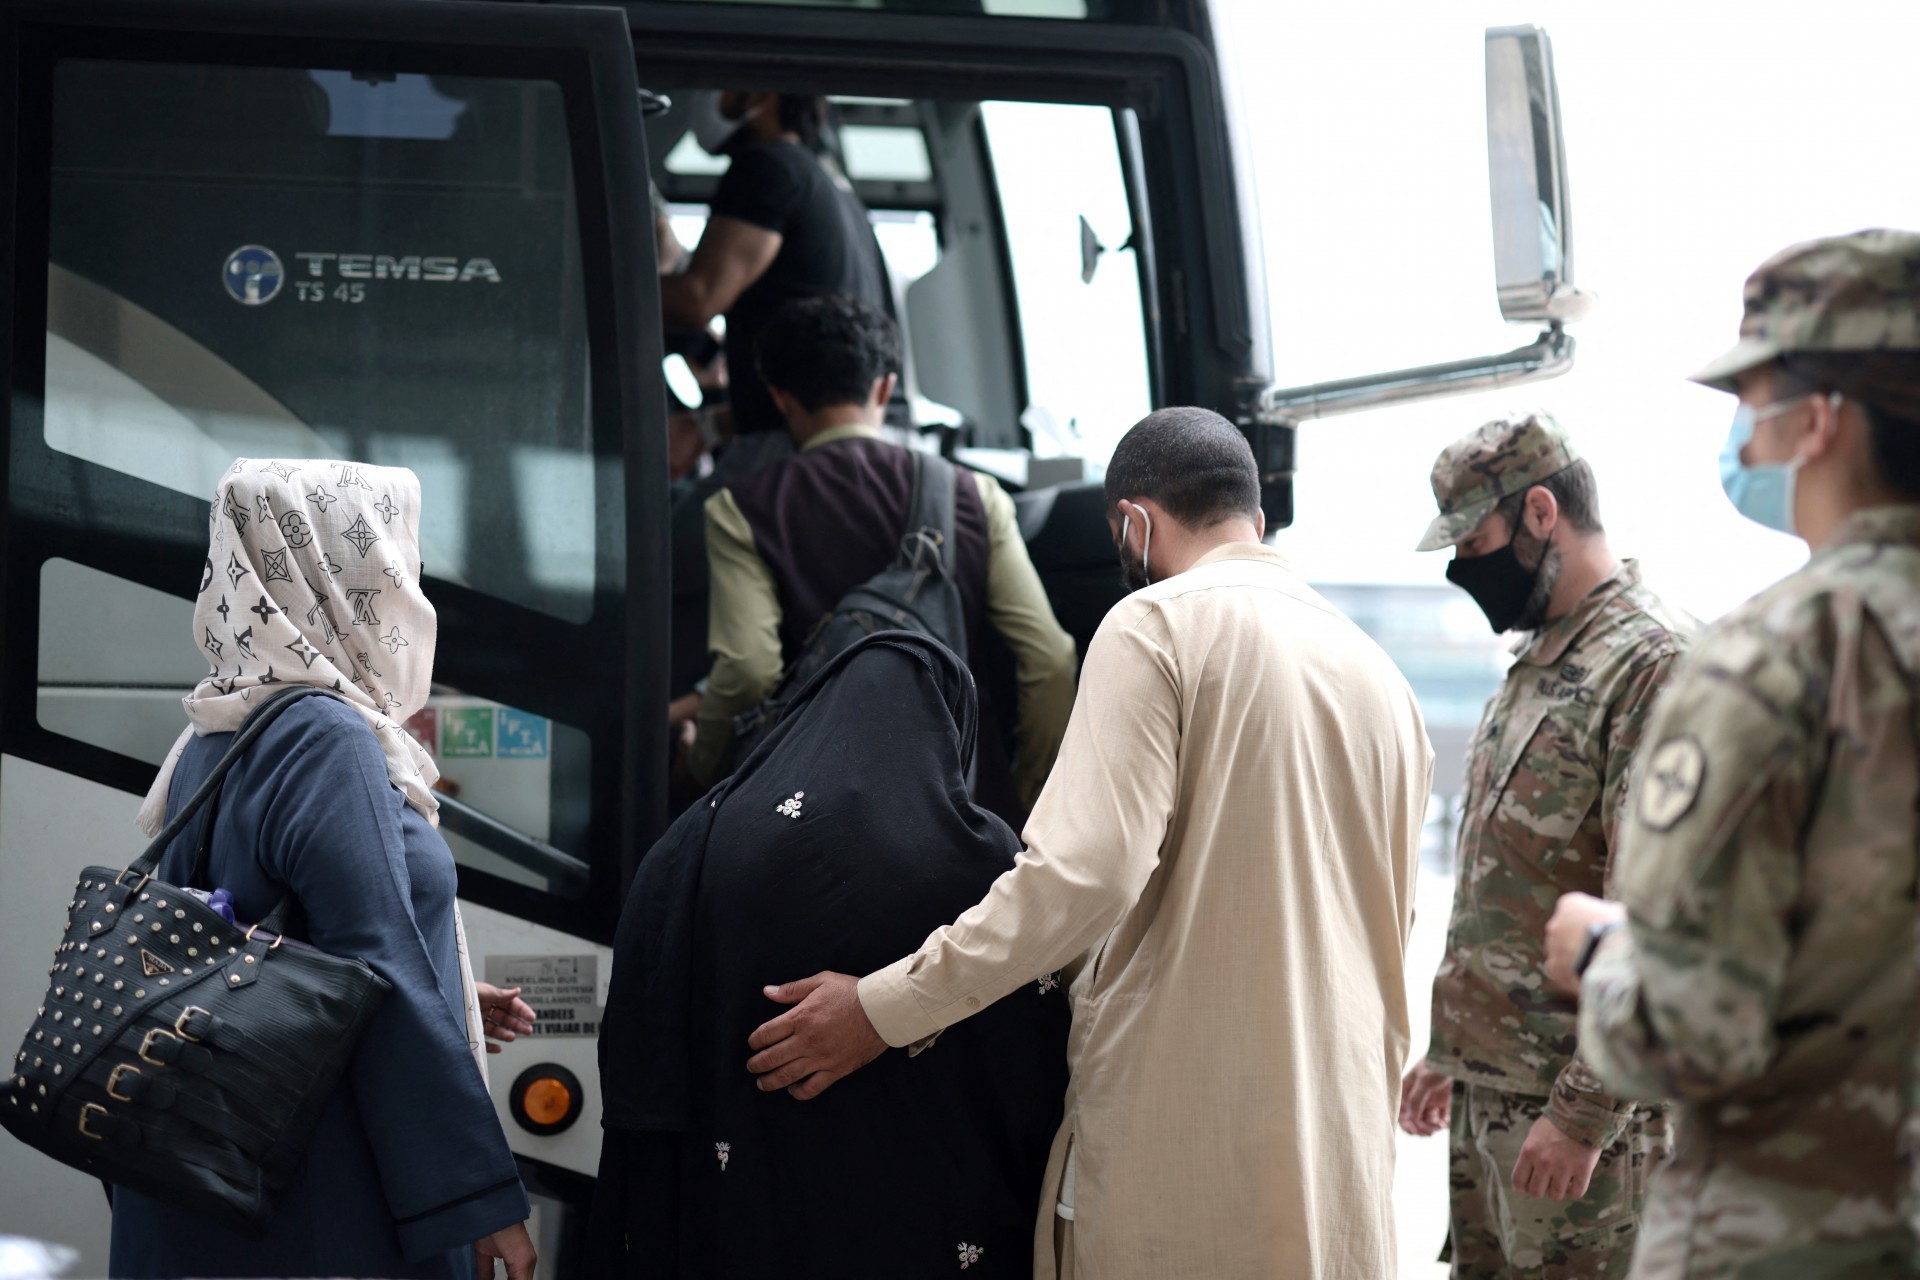 DULLES, VIRGÍNIA - 31 DE AGOSTO: Refugiados embarcam em um ônibus no Aeroporto Internacional de Dulles que os levará a um centro de processamento de refugiados após serem evacuados de Cabul após a tomada do Talibã no Afeganistão em 31 de agosto de 2021. O Departamento de Defesa anunciou ontem que os militares dos EUA concluíram sua retirada do Afeganistão, encerrando 20 anos de guerra. Anna Moneymaker / Getty Images / AFP(Foto: Anna Moneymaker / GETTY IMAGES NORTH AMERICA / Getty Images via AFP)